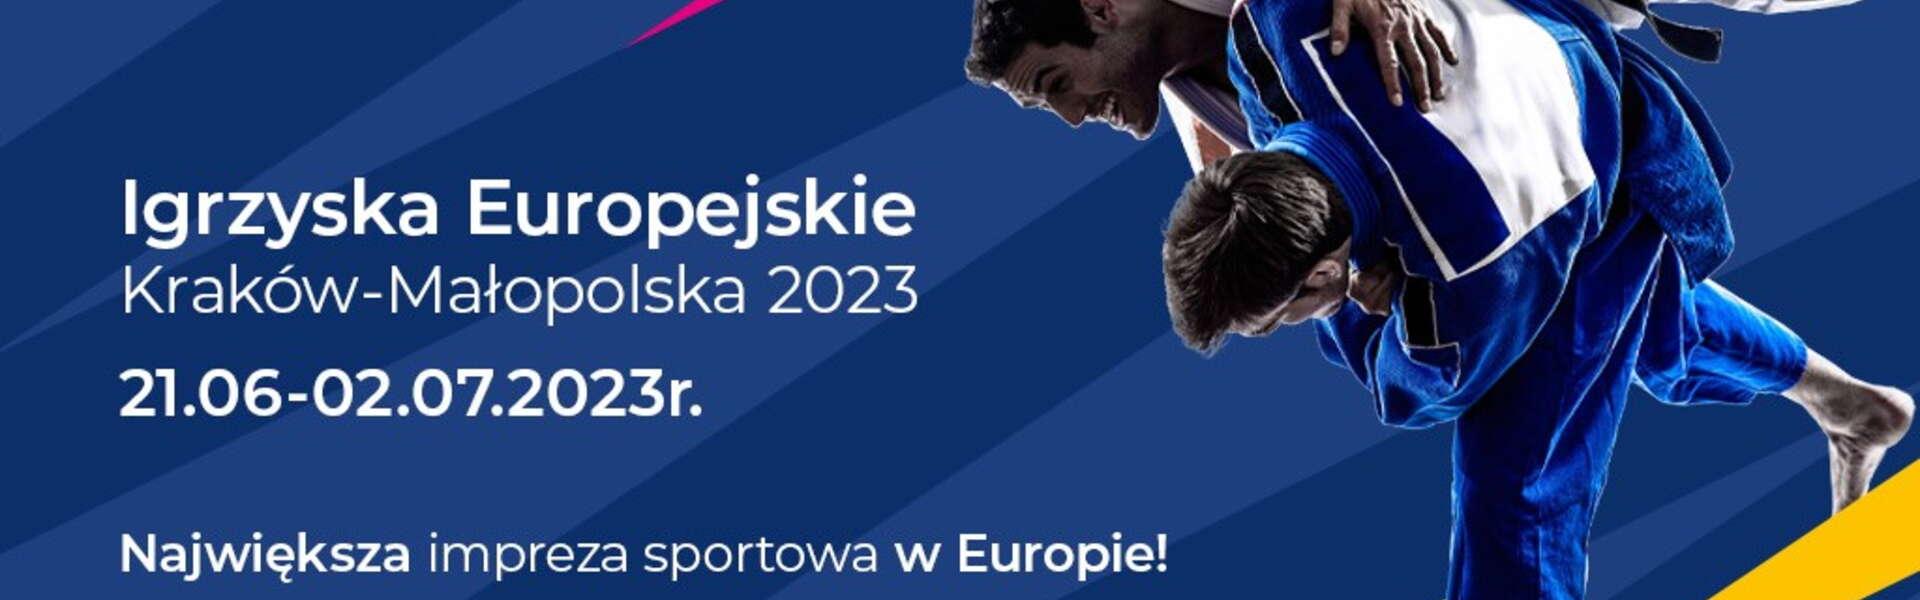 Grafiken, die die European Games in Krakau zeigen. In der Grafik sieht man 2 Männer in Kimonos die gegeneinander kämpfen.